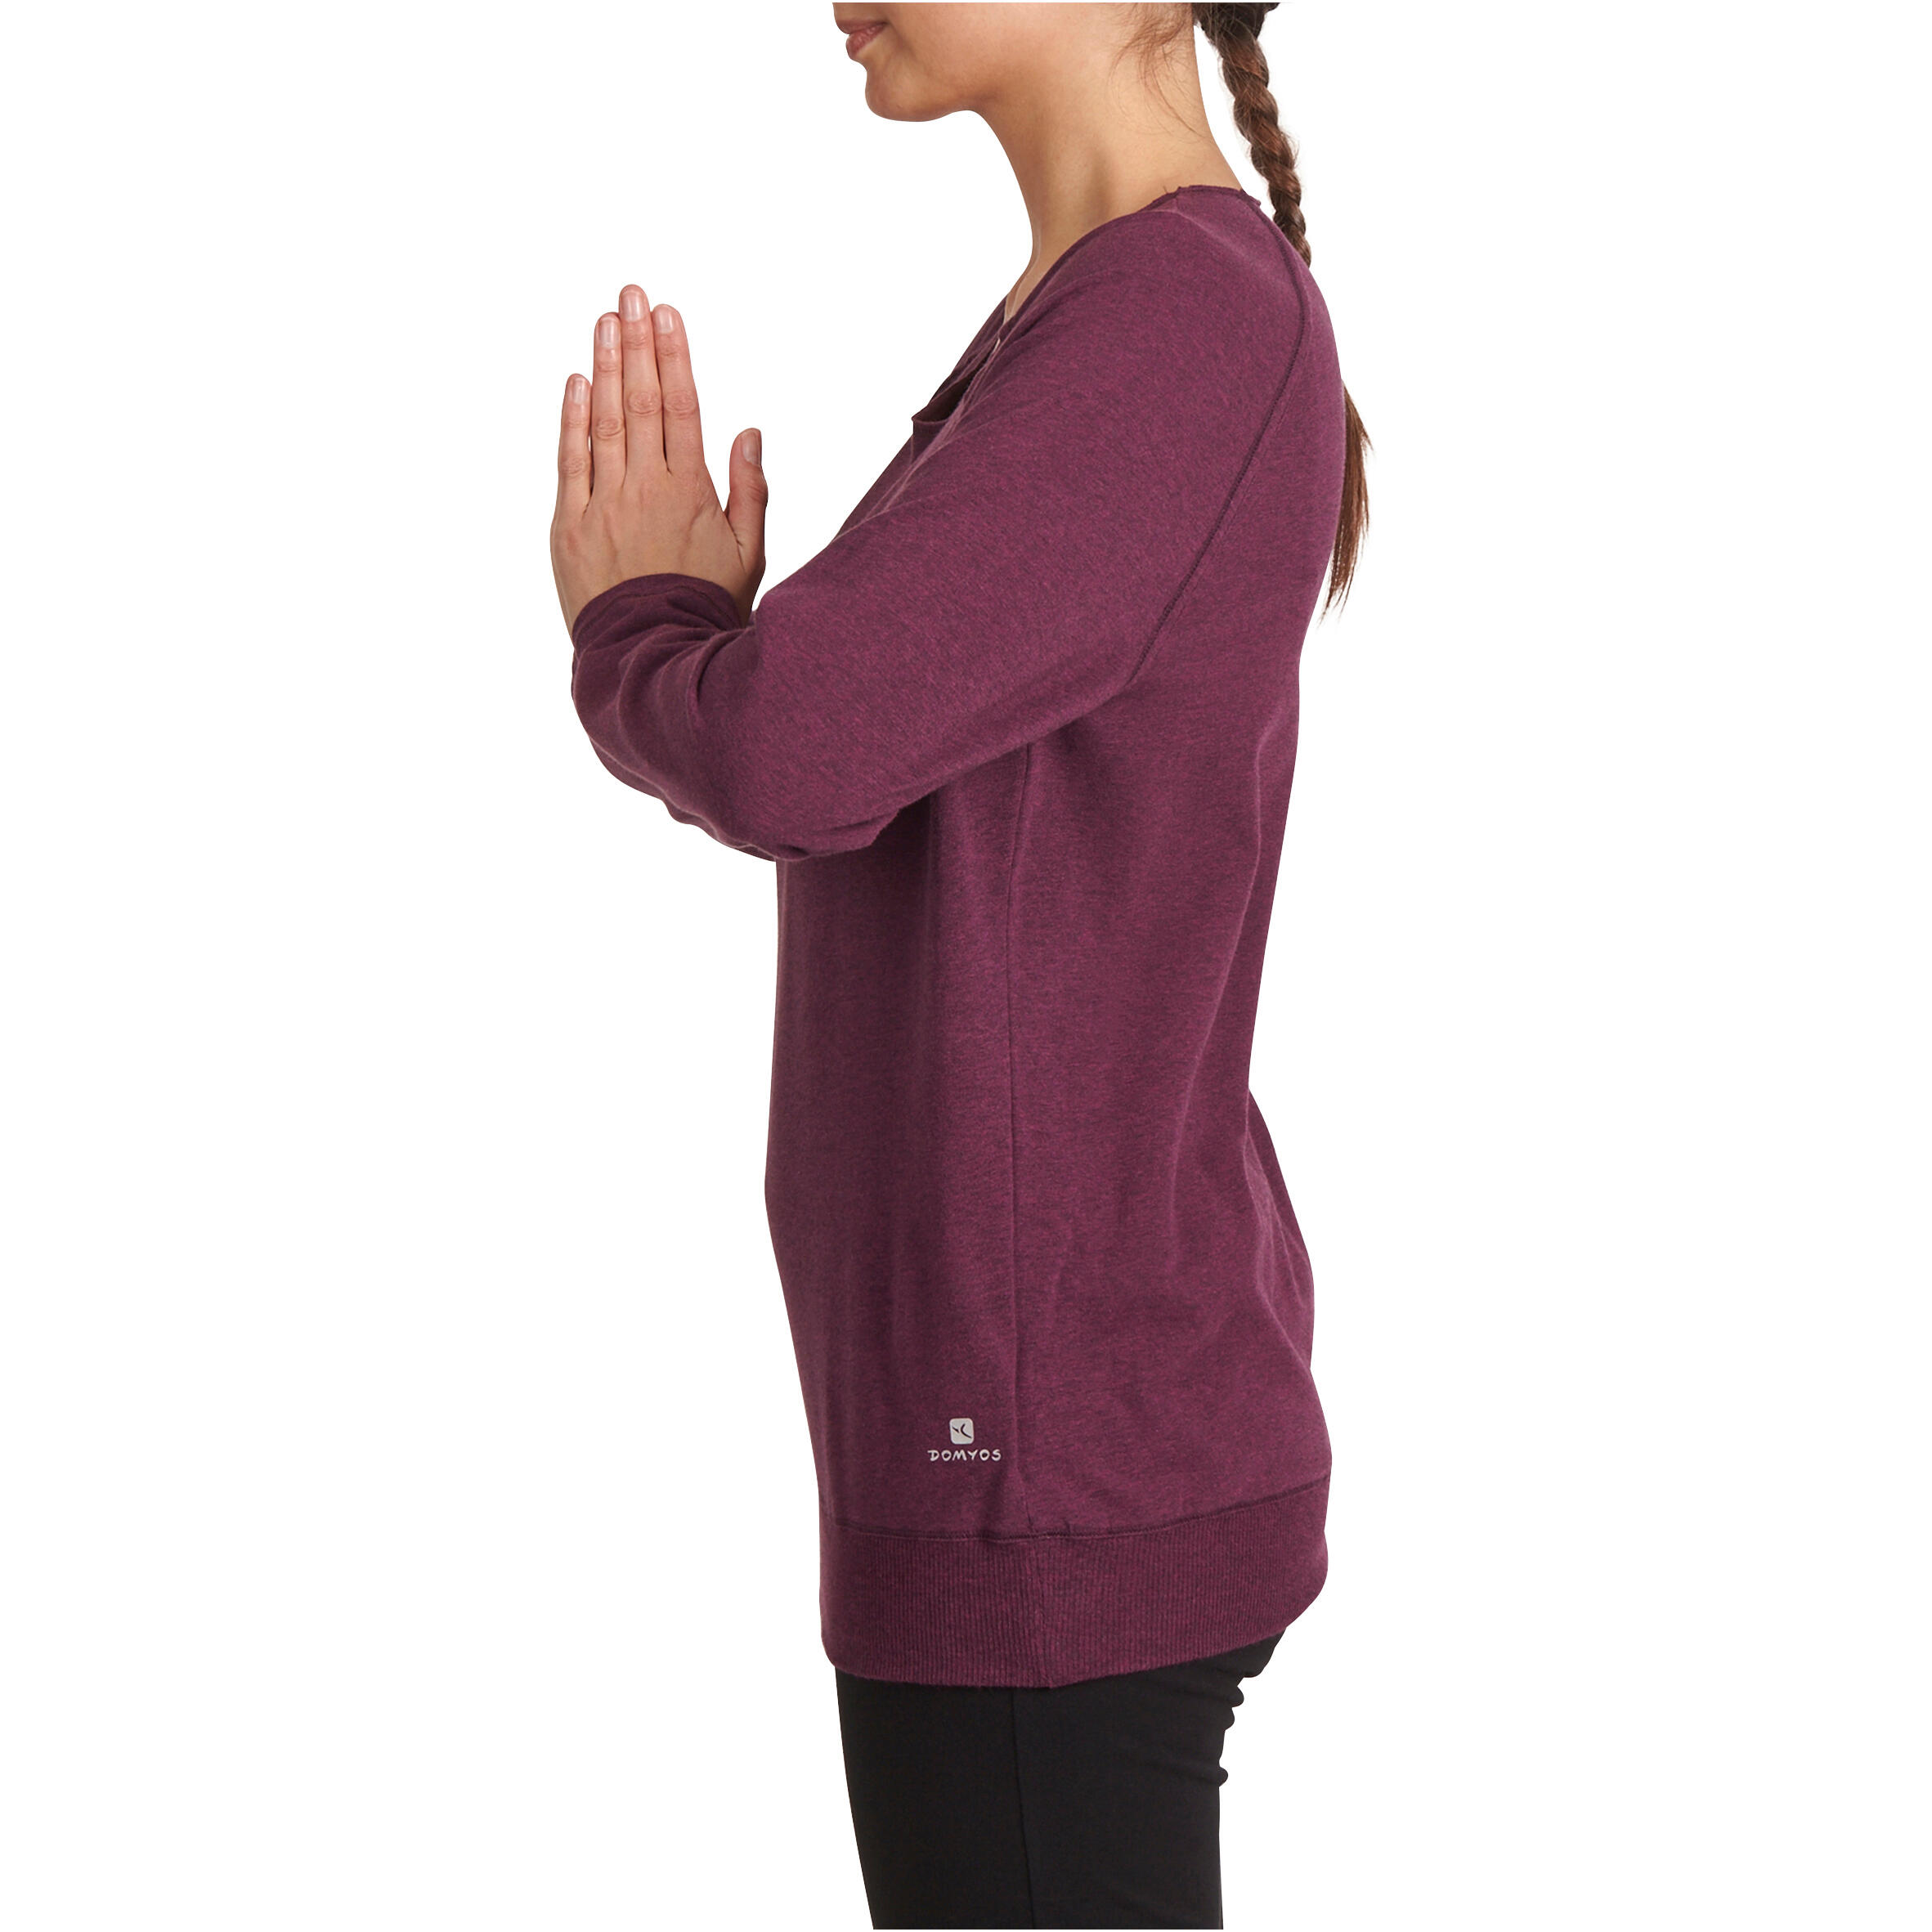 Women's Organic Cotton Long-Sleeved Yoga T-Shirt - Mottled Burgundy 4/12